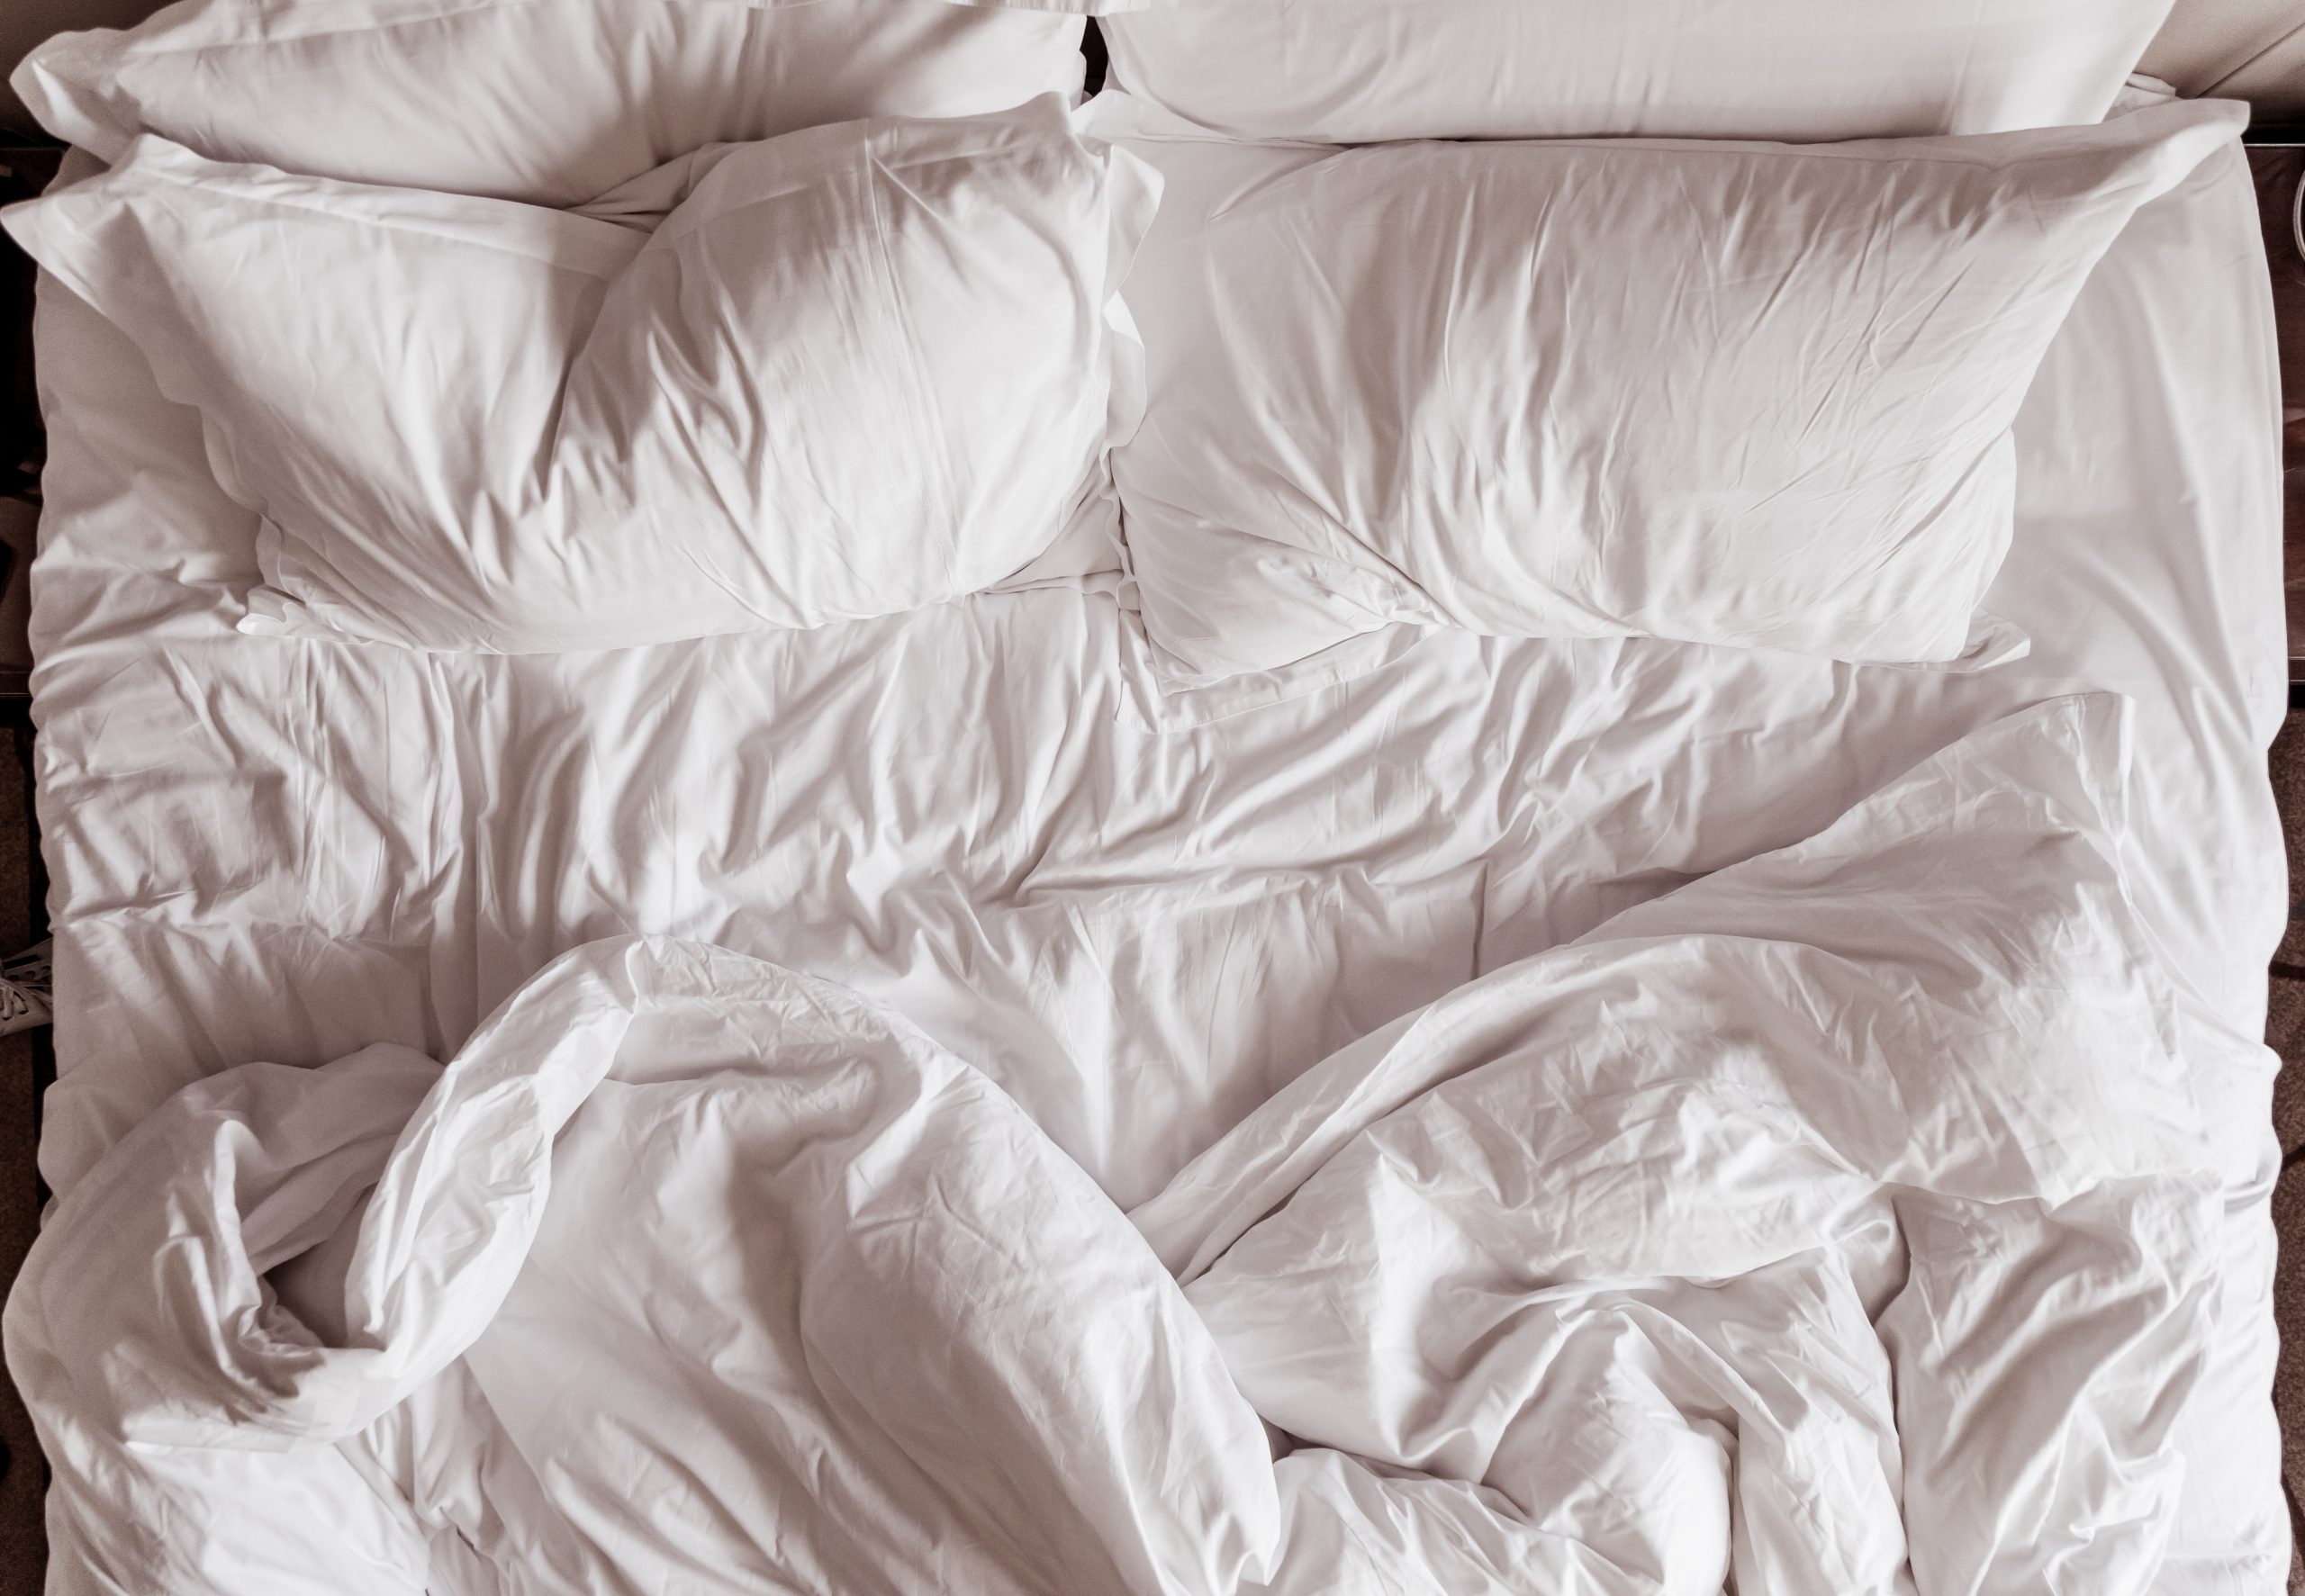 Смятая белая постель. Кровать вид сверху. Одеяло. Складки на одеяле. Постель вид сверху.